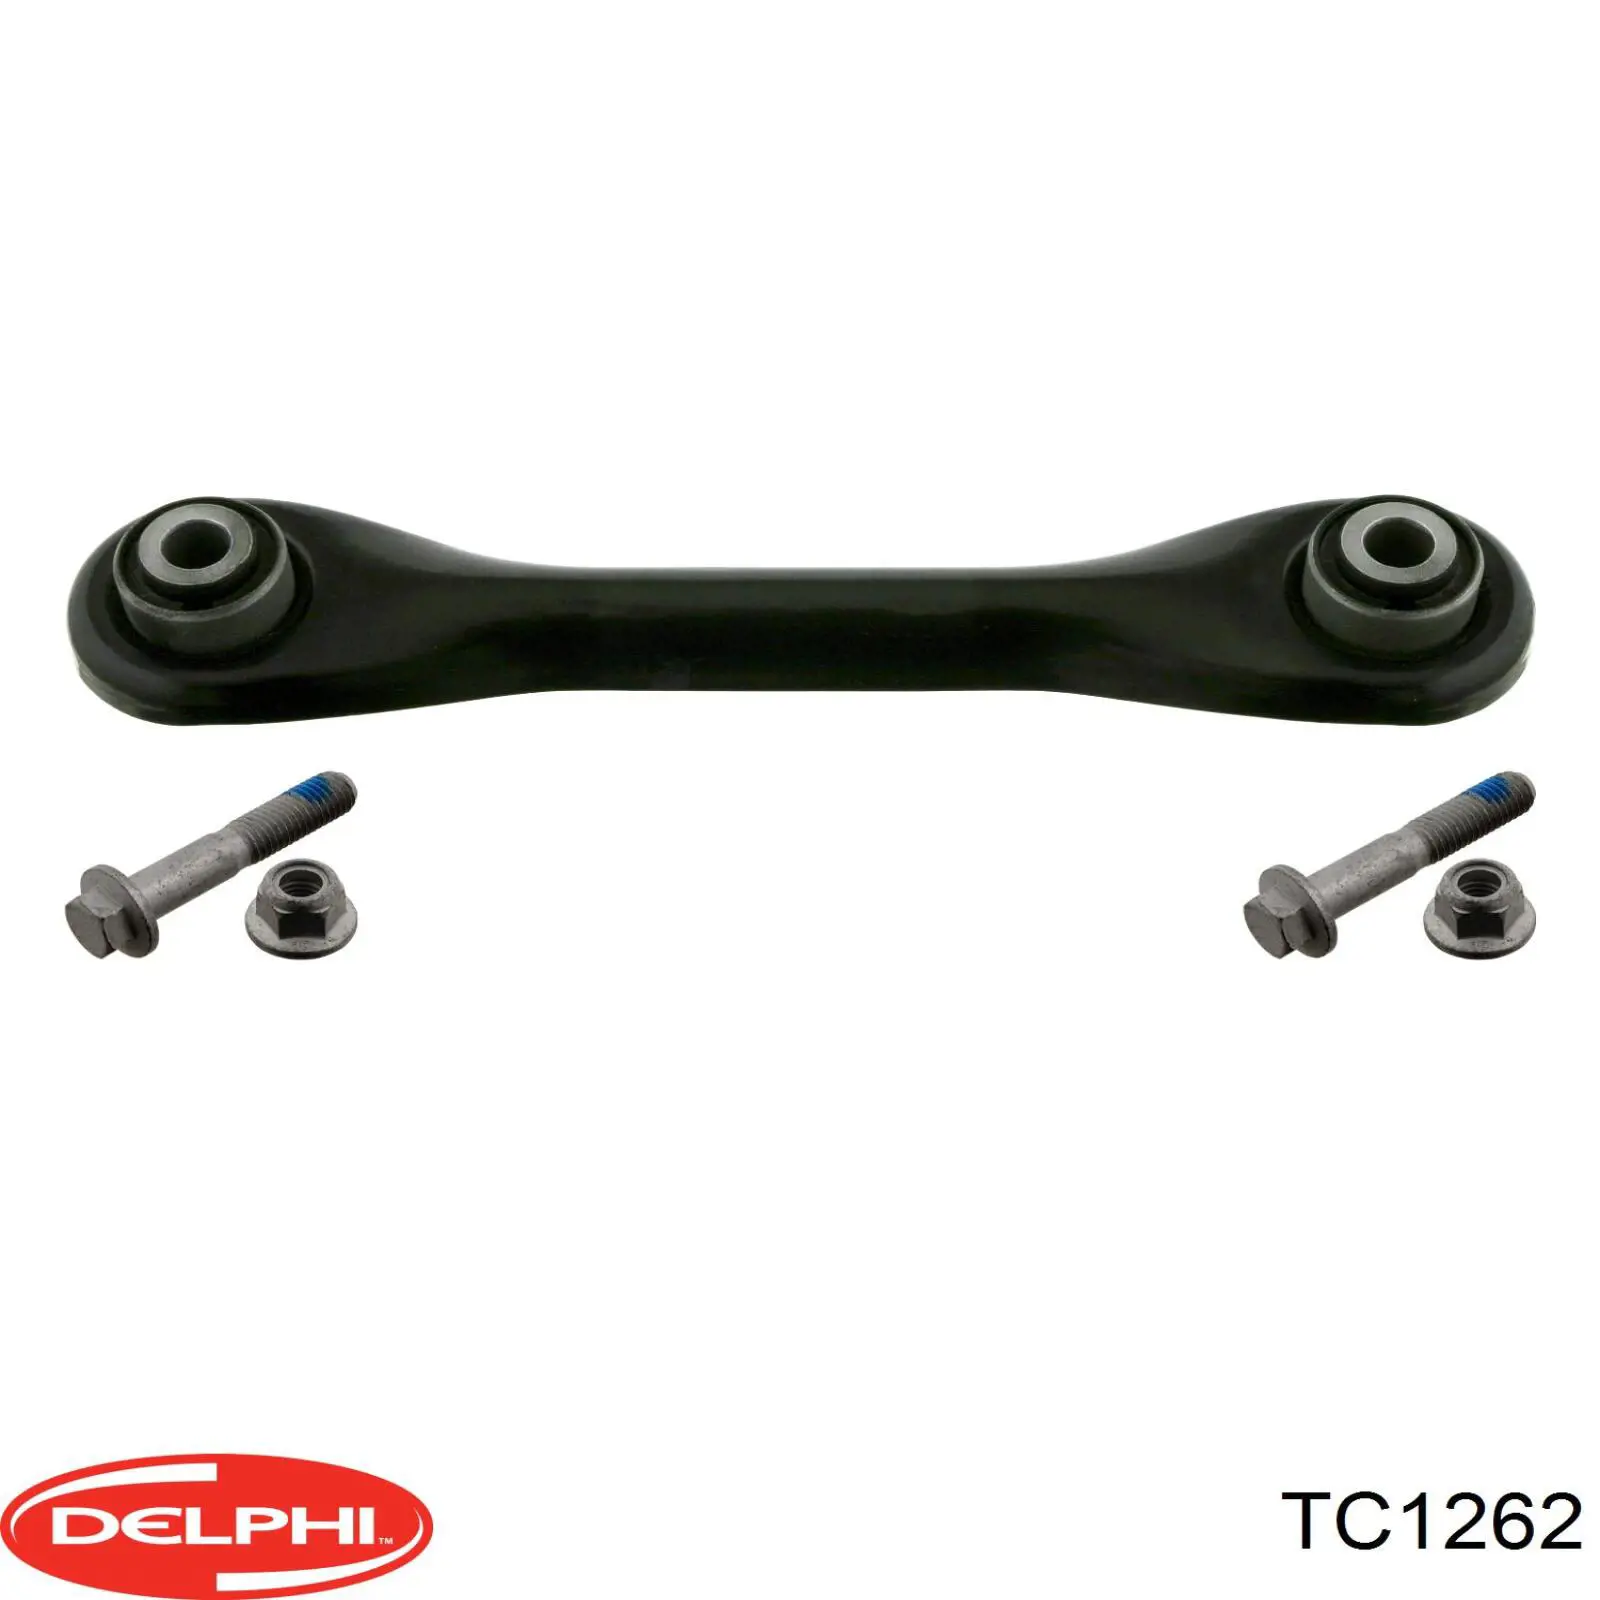 TC1262 Delphi brazo de suspension trasera